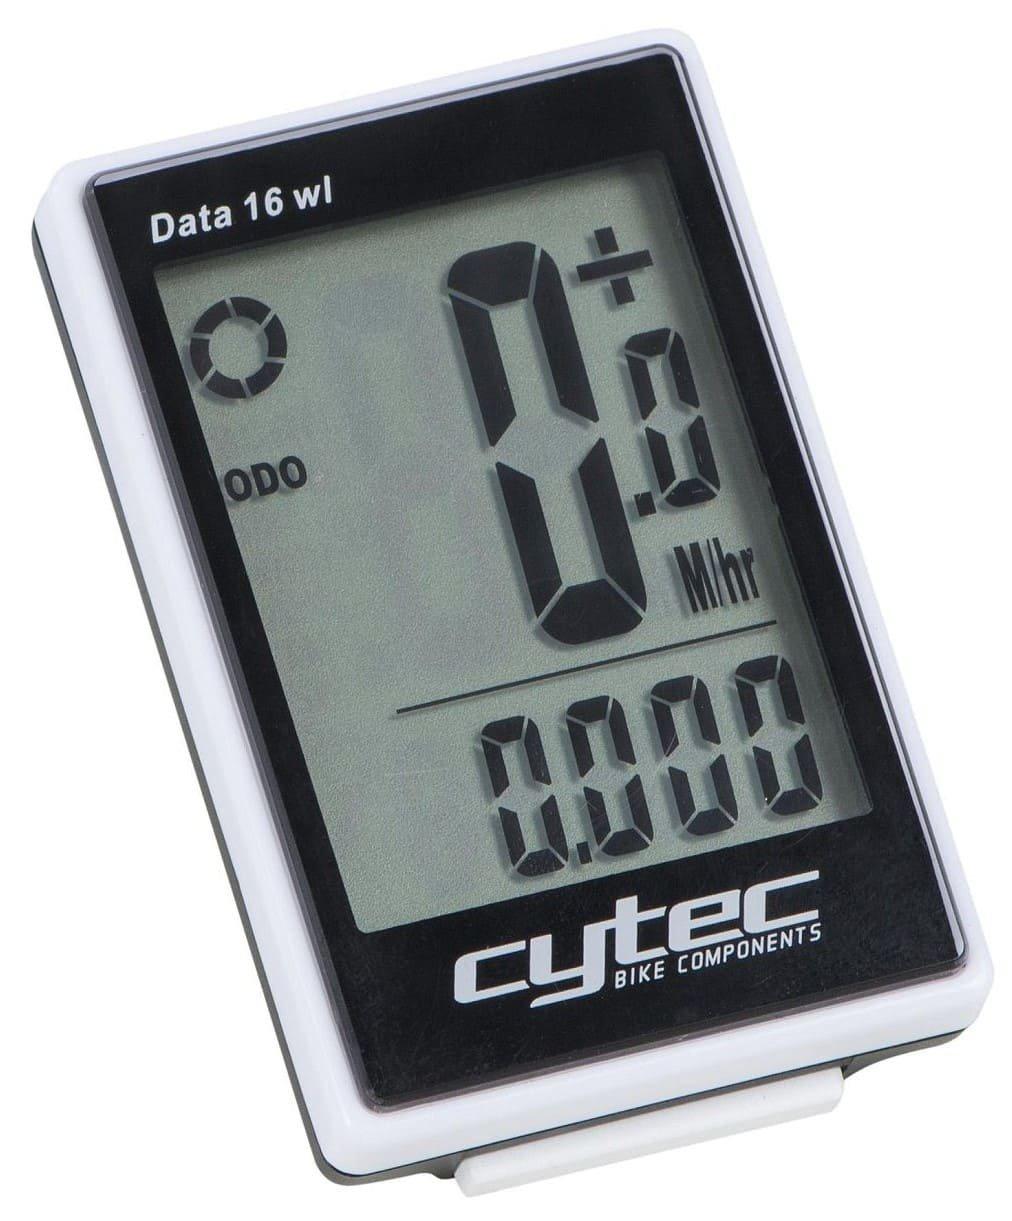 Tachometer Cytec Data Wireless Cycling Computer Veľkosť: Univerzálna veľkosť